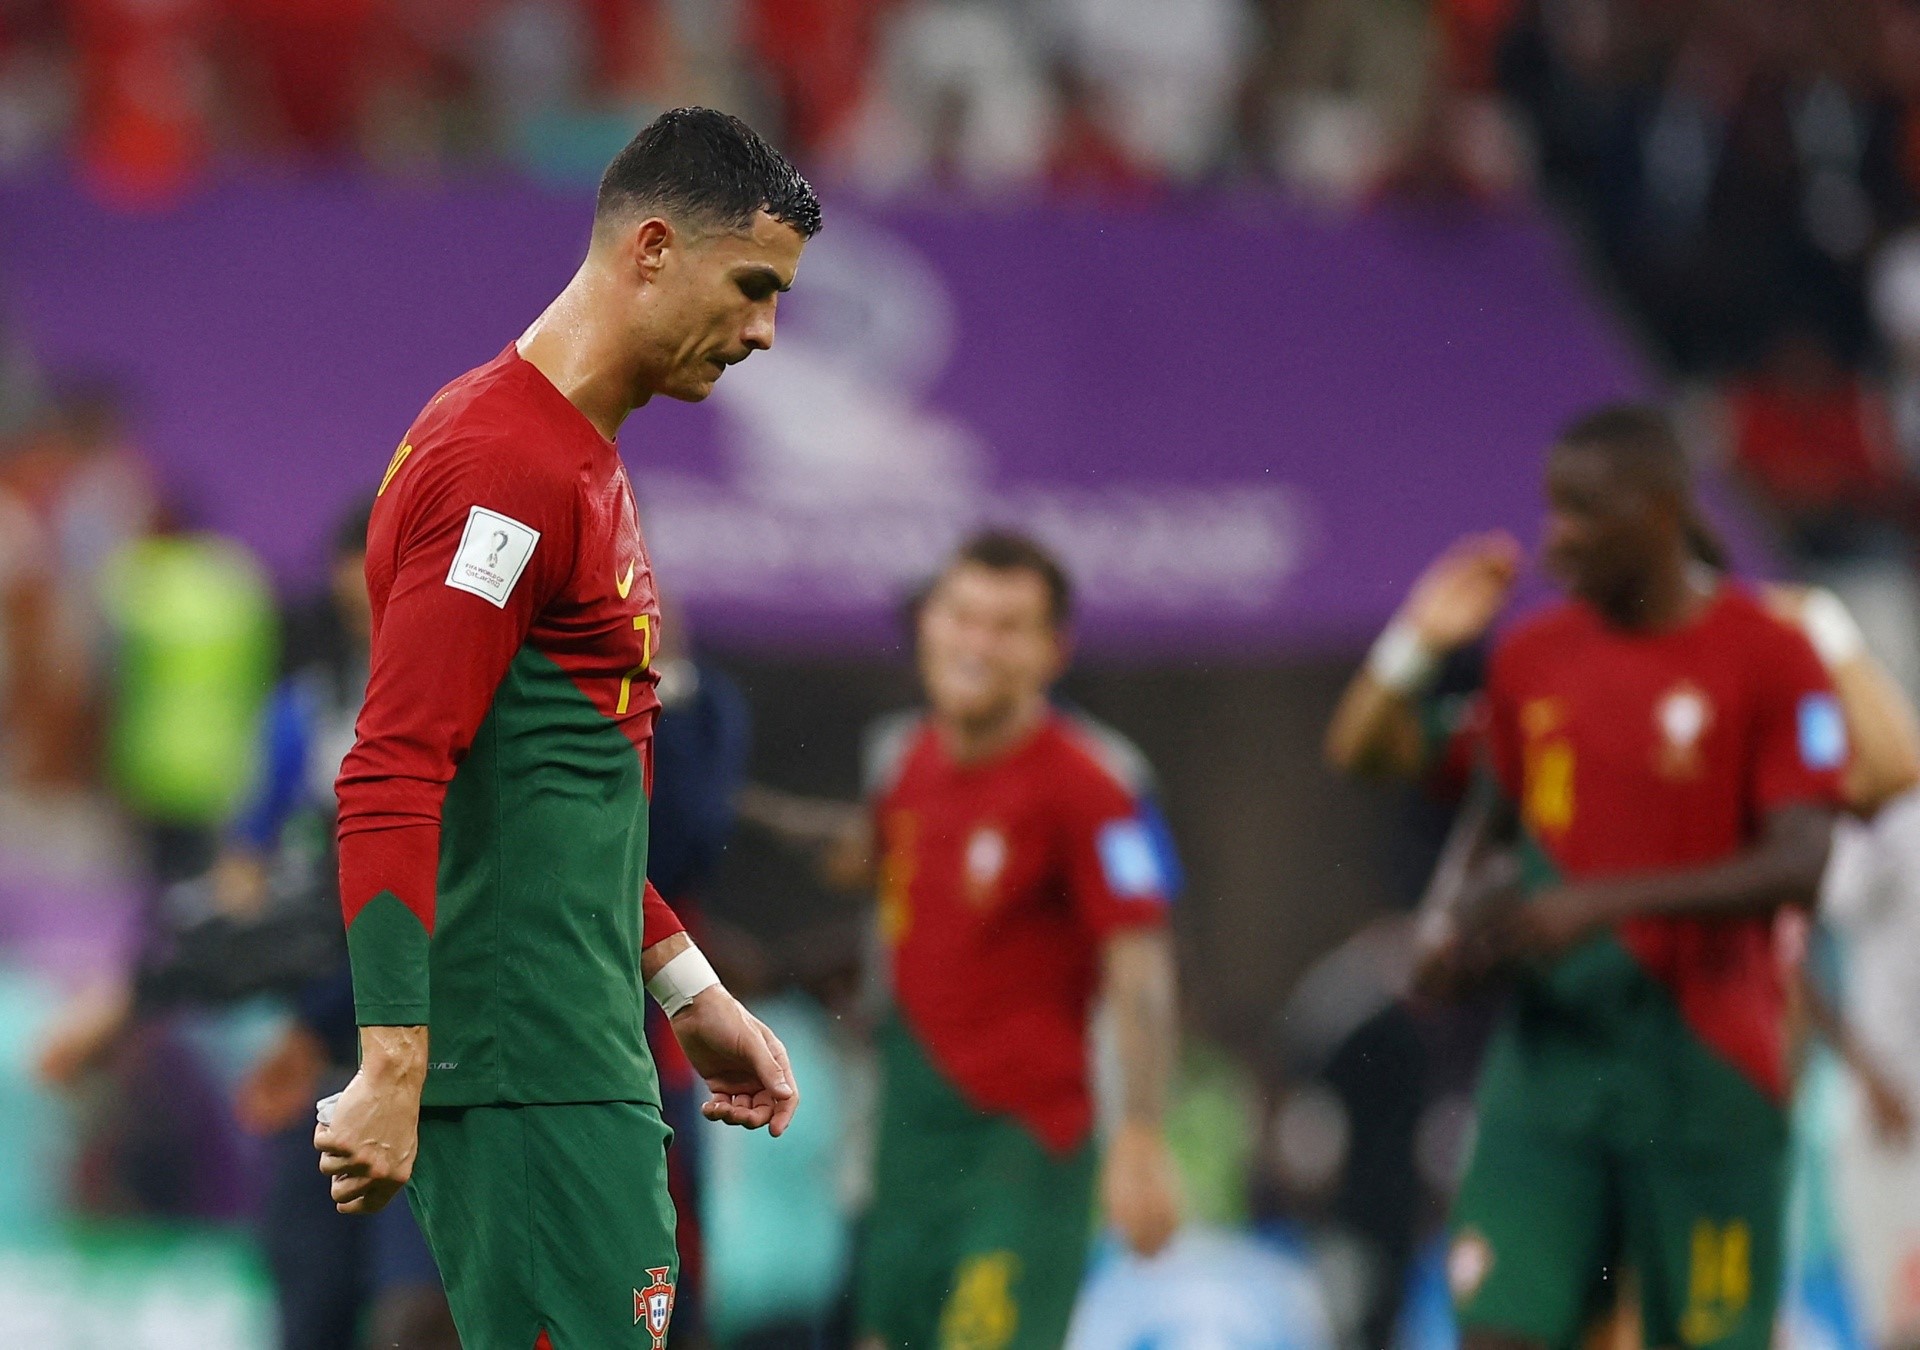 Bồ Đào Nha rất mạnh khi để Ronaldo dự bị